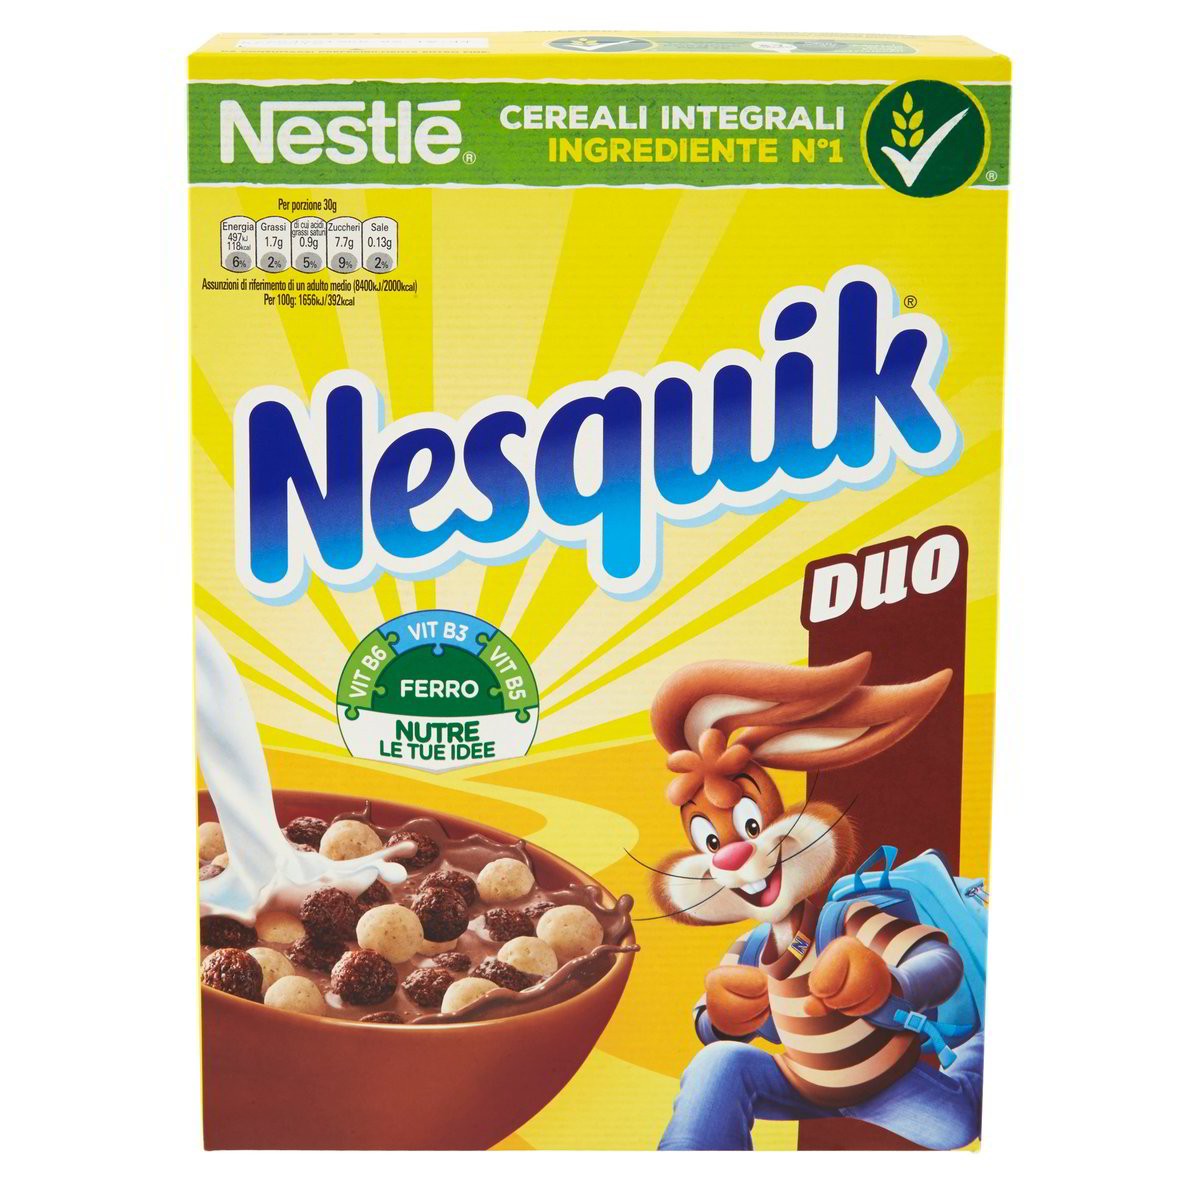 Cereali integrali Nesquik Duo